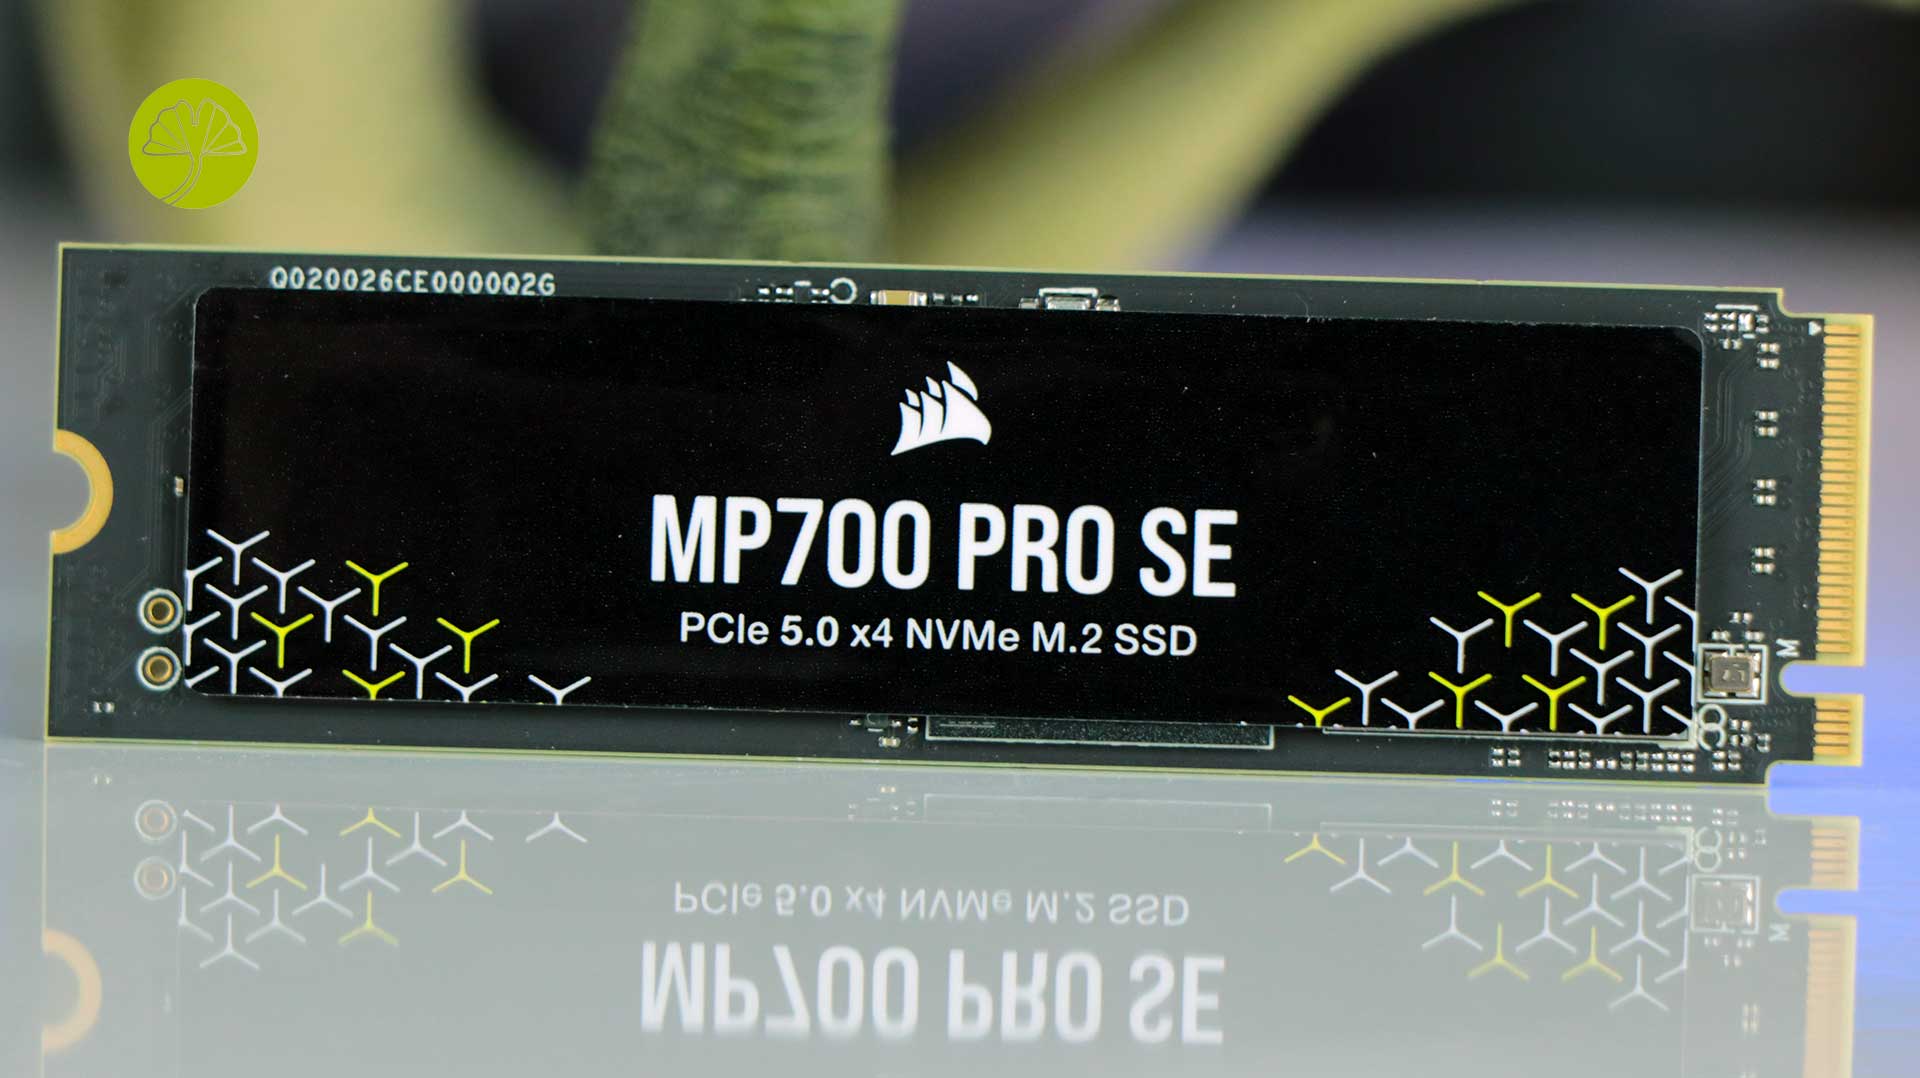 MP700 Pro SE 4 To